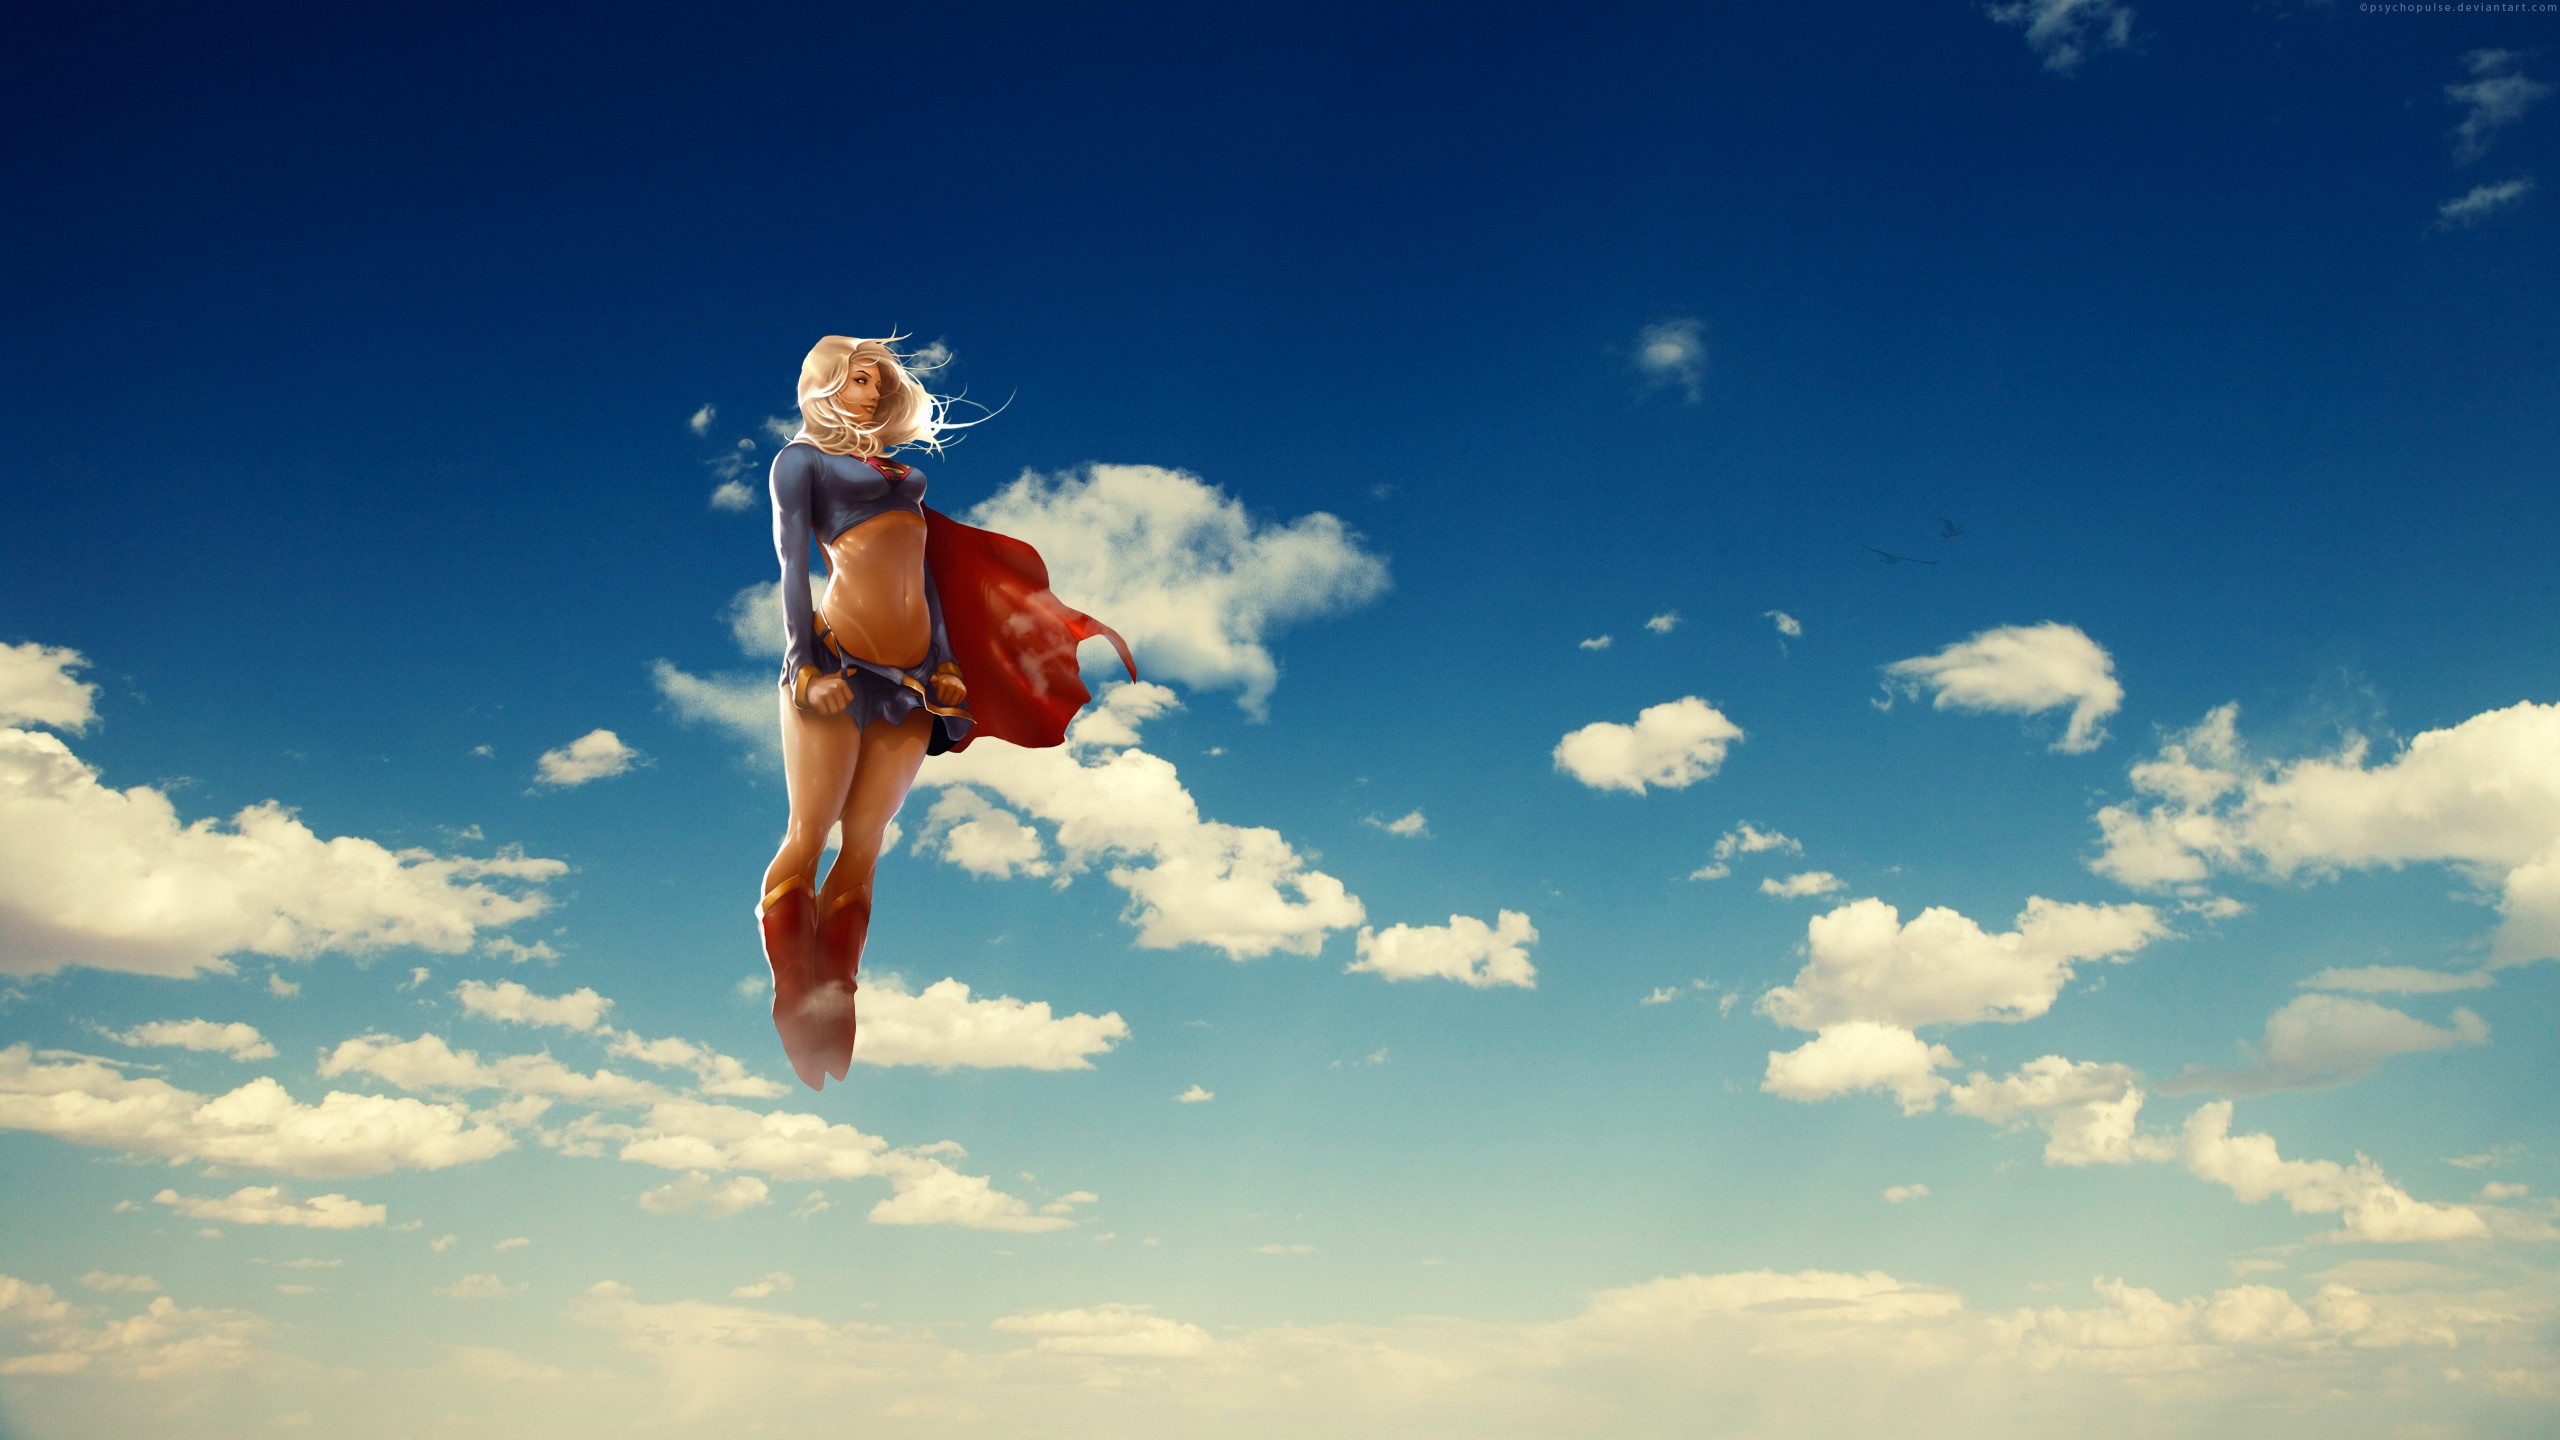 Clouds Flying Supergirl Superhero Digital Art